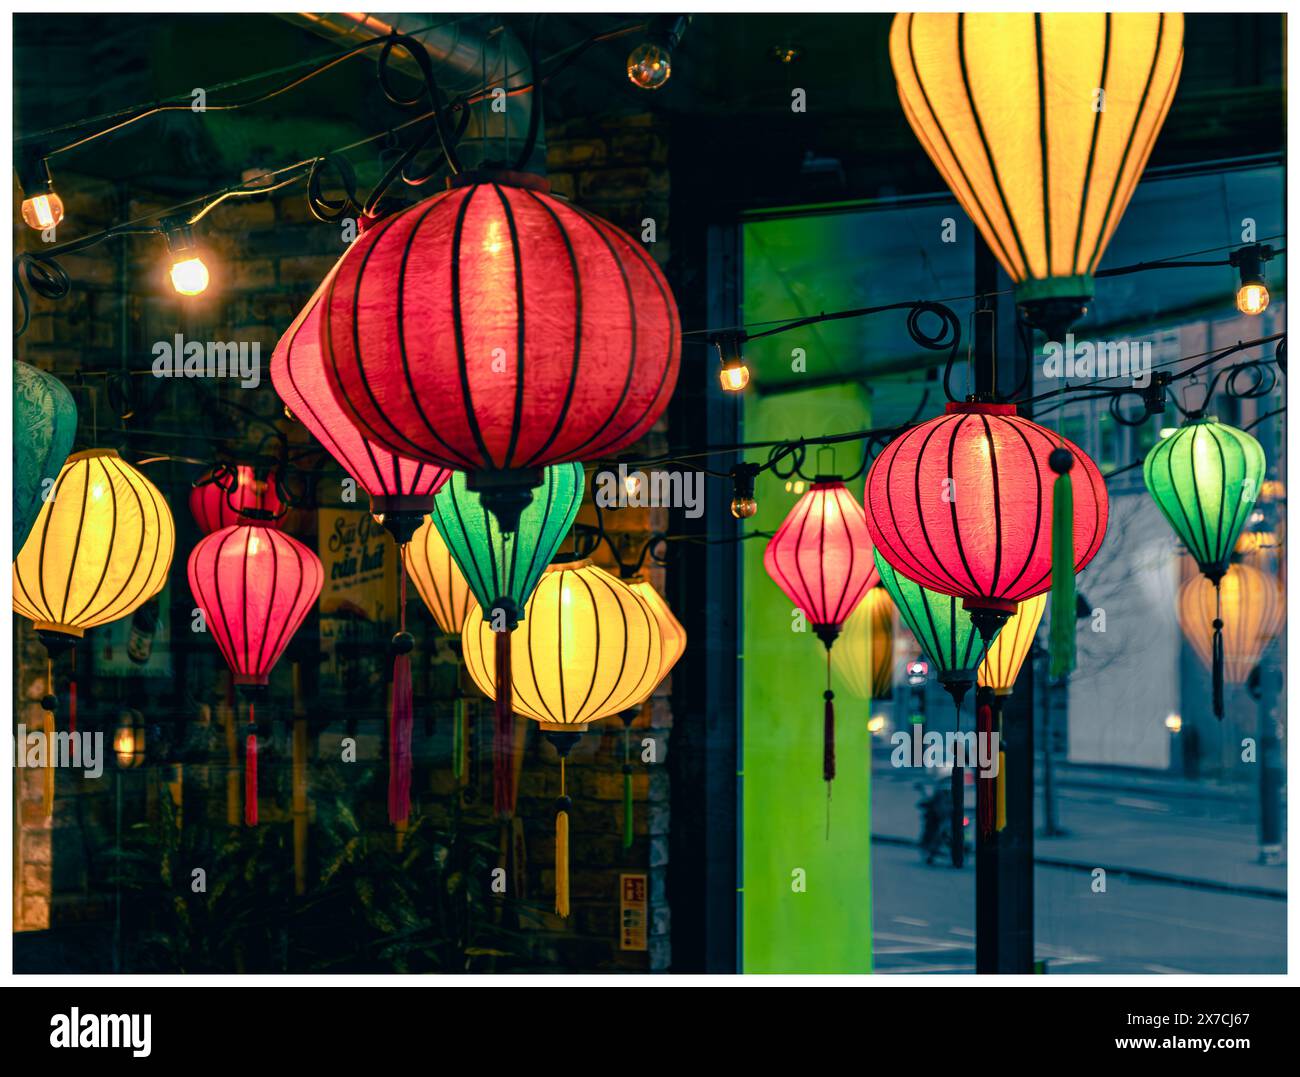 Lanternes colorées de style chinois suspendues dans un restaurant et vues à travers la fenêtre vitrée et de l'autre côté Banque D'Images